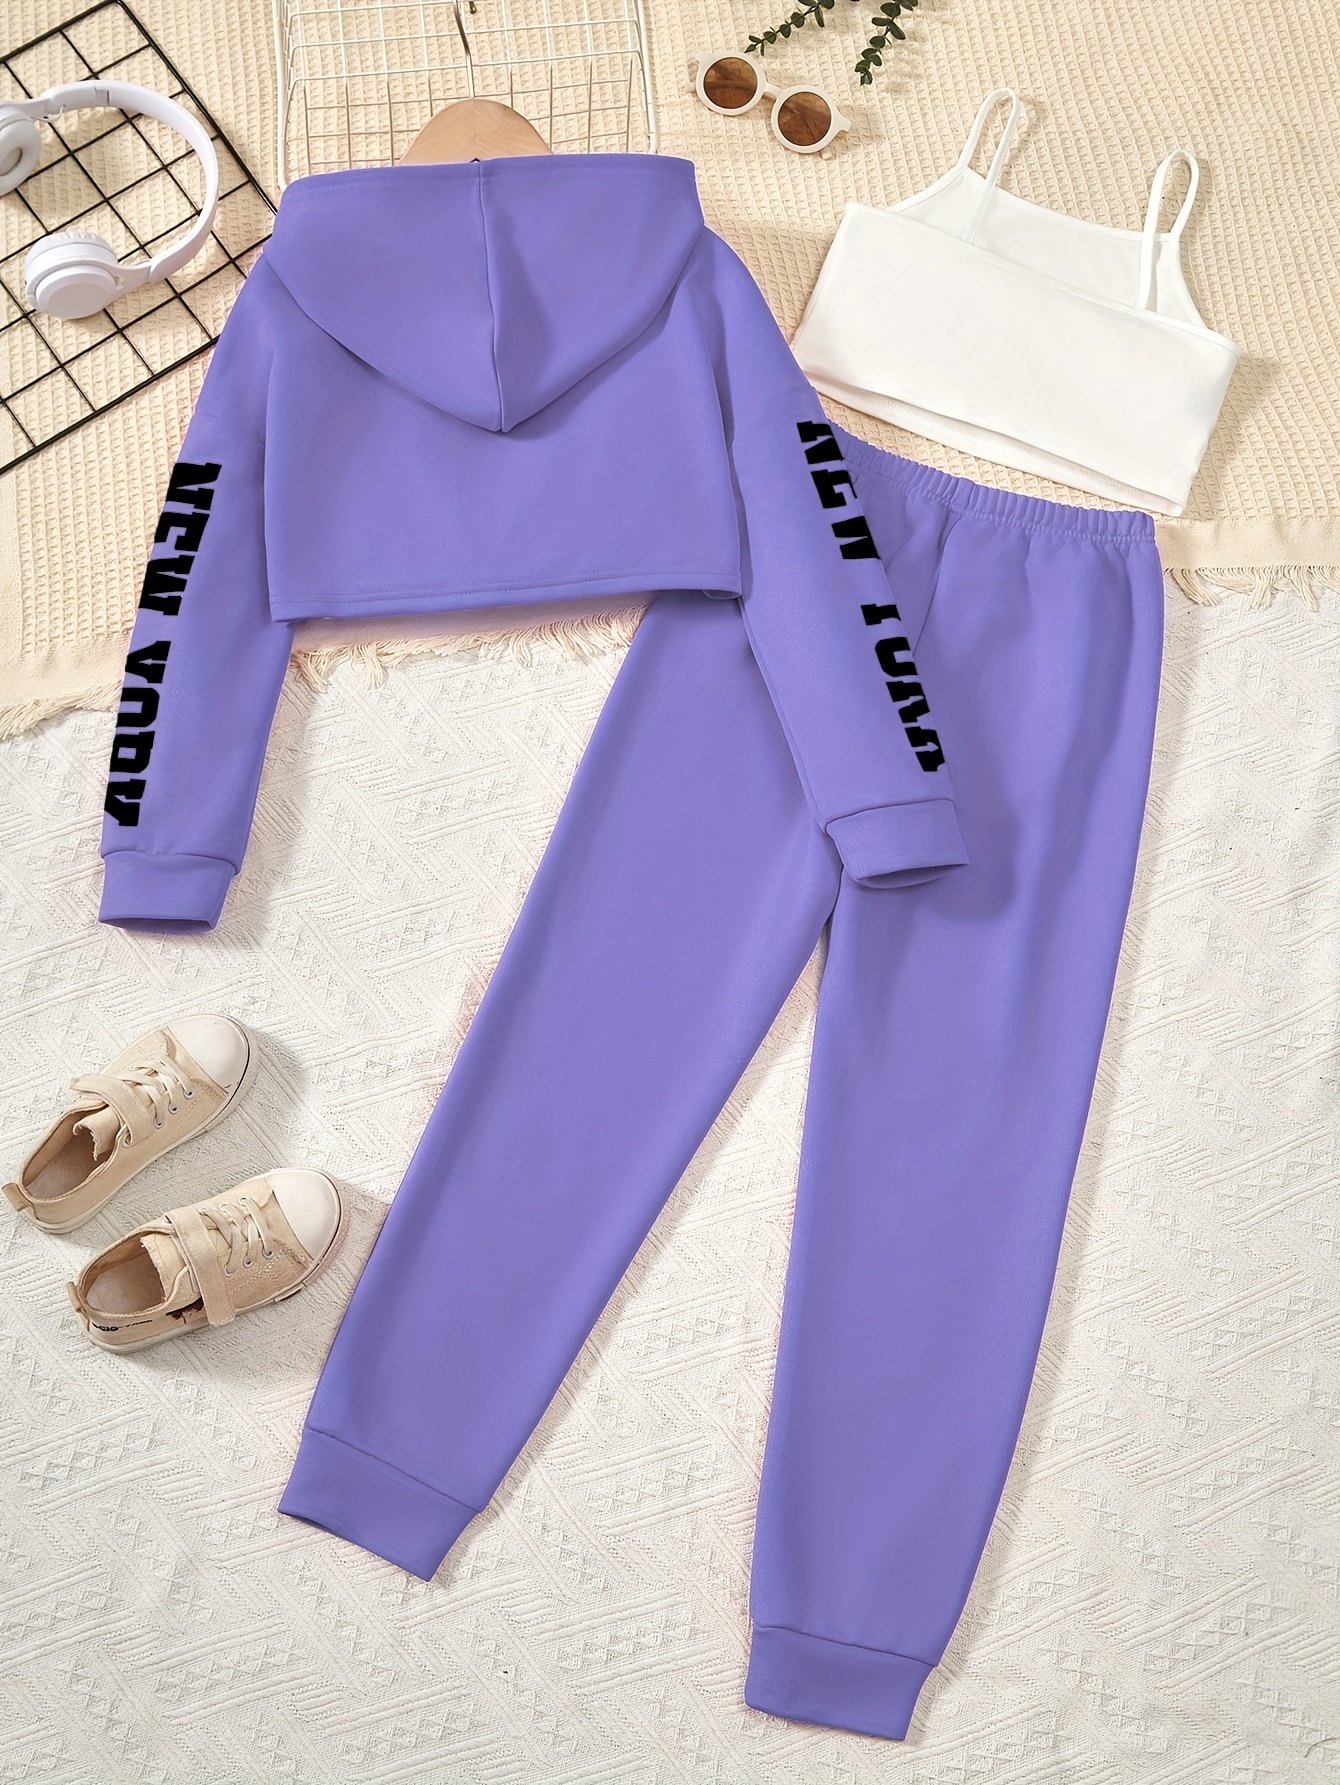 New! Girl's Purple Tank Top and Multi Print Capri Leggings Outfit